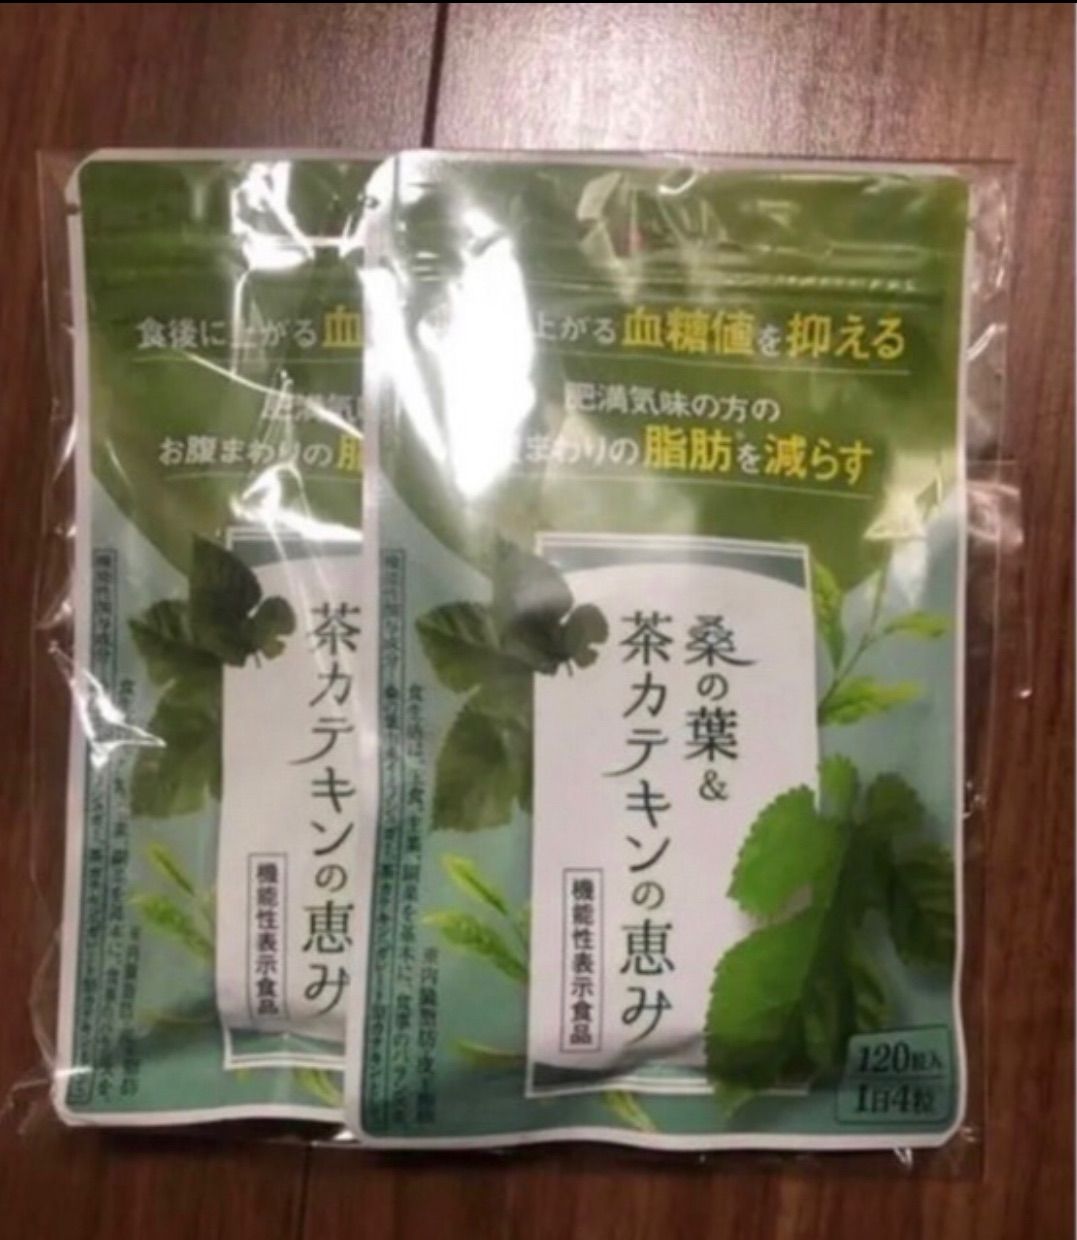 和漢の森 桑の葉 茶カテキンの恵み - 健康用品